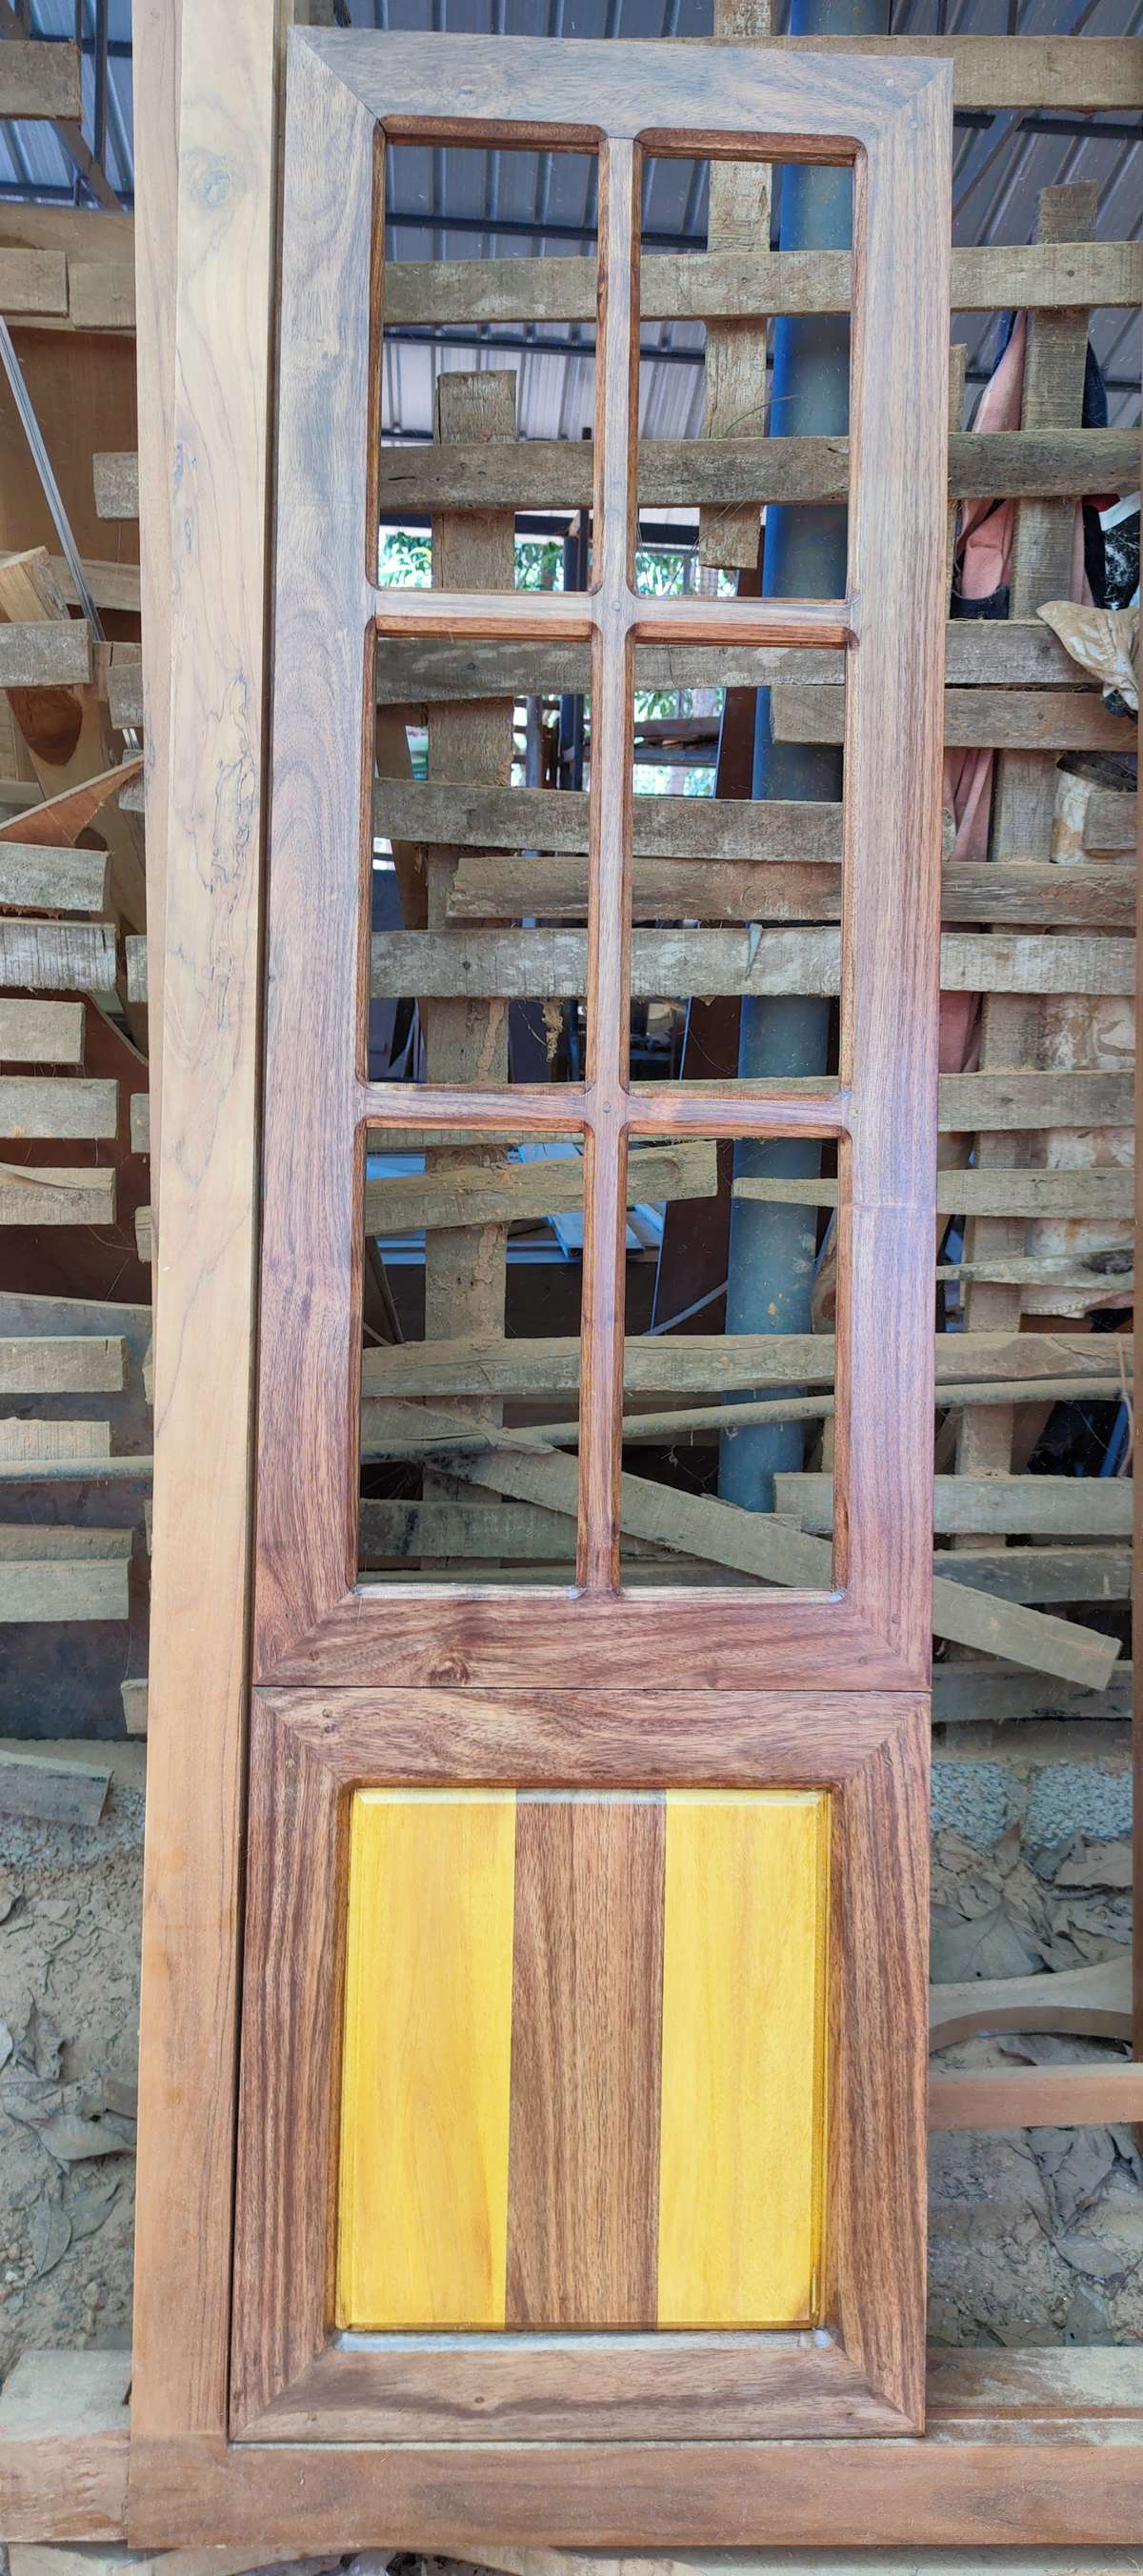 വാകയും പ്ലാവും ചേർന്ന് മനോഹരമായ ഡിസൈൻ.
പോളിഷ് മാറ്റ് ചെയ്തിരിക്കുന്നു.

കൂടുതൽ വിവരങ്ങൾക്ക് :9995950606
M A FURNITURE
KARAPPURAM
NILAMBUR


 #WindowsIdeas  #WoodenWindows  #woodworkzk  #window #windows #nilambur #qualityconstruction  #quality  #qualitywood